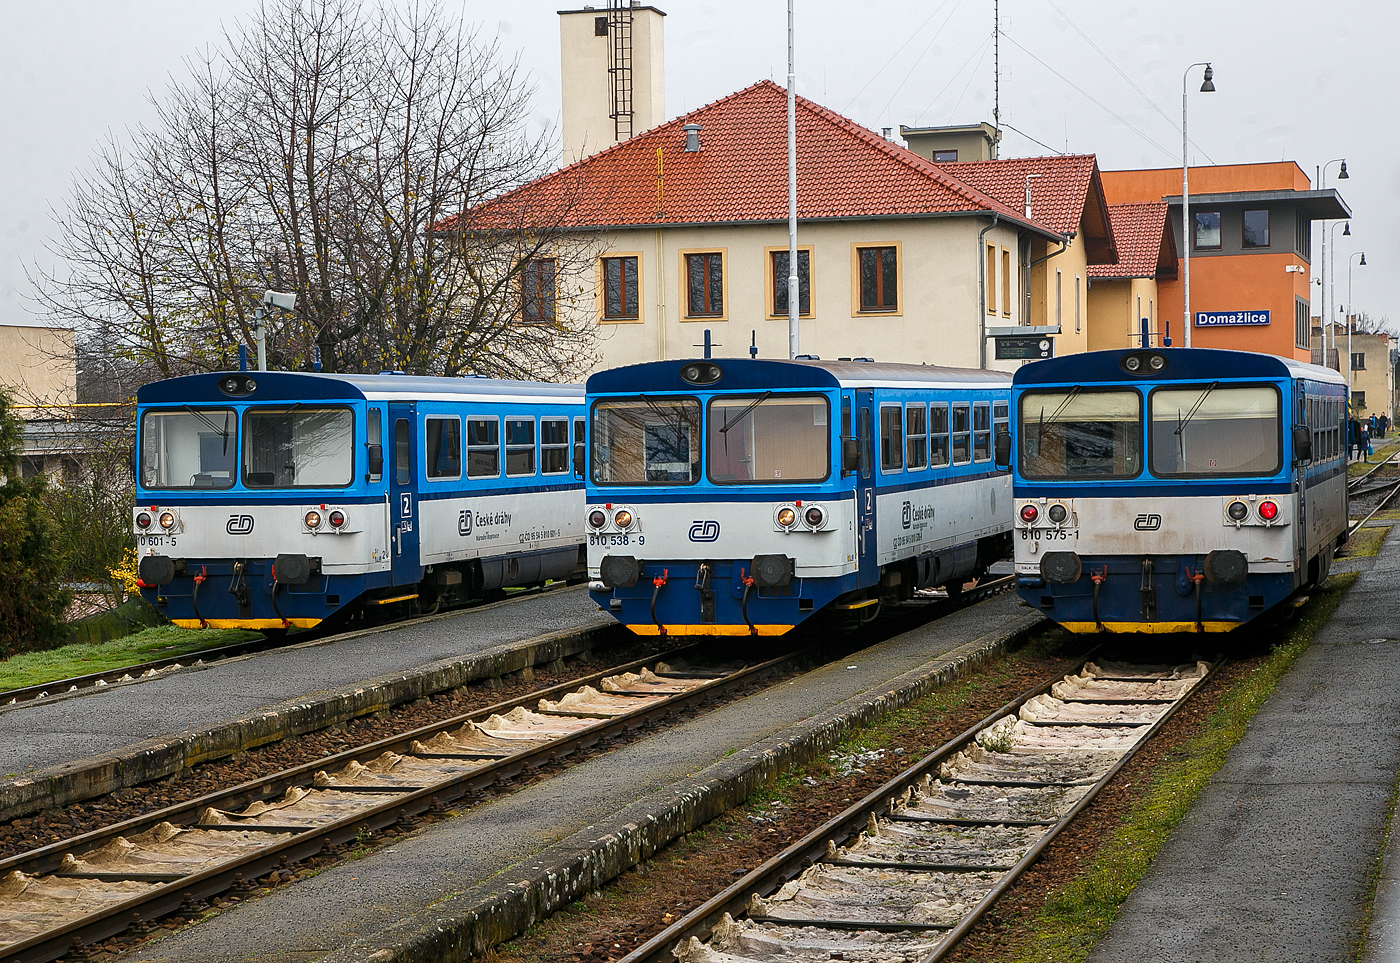 Gleich drei Brotbchsen...
Die drei zur „RegioMouse“ modernisierte “Chcpk”  (Brotbchsen), zweiachsige Dieseltriebwagen der ČD BR 810 (ex ČSD M 152.0) stehen am 22.11.2022 im Bahnhof Domalice (Taus) zur Abfahrt bereit. Es sind von links nach rechts, der (CZ-ČD 95 54 5) 810 601-5, 810 538-9 und 810 575-1. 

Die zweiachsige Dieseltriebwagen fr den Regionalverkehr wurden als Baureihen M 152.0 (ab 1988: Baureihe 810) fr die Tschechoslowakischen Staatsbahnen (ČSD) gebaut. Die Fahrzeuge bilden die dritte Generation zweiachsiger Triebwagen der ČSD. Die seit 2018 einer zweiten Modernisierung unterzogenen Fahrzeuge der ČD-Baureihen 809 und 810 werden als „RegioMouse“ vermarktet.

Ab 1975 wurden bei Vagonka Tatra in Studnka (heute koda Vagonka a.s.) in sieben Bauserien 680 zweiachsige Dieseltriebwagen fr die ČSD als Baureihe M 152.0 gebaut. Nahezu baugleiche Fahrzeuge wurden an die Ungarischen Staatsbahnen (MV), als Bzmot, geliefert. Passend zu den Triebwagen wurden entsprechende Beiwagen vom Typ Blm geliefert, welche in Aufbau und Aussehen identisch mit den Triebwagen sind. Jedem Triebwagen konnten zwei Beiwagen beigegeben werden. Aufgrund der eckigen Aufbauten erhielten die Triebwagen von deutschen Eisenbahnfreunden den Spitznamen „Brotbchse“.

Zwischen 1987 und 1990 fhrten die ČSD EDV-gerechte Triebfahrzeugnummern ein. In der bergangszeit wurden die EDV-Nummern zustzlich zu den alten Gussschildern mit Klebeziffern angebracht. Die Triebwagen erhielten die Reihenbezeichnung 810, die Beiwagen 010. Beide Nachfolgeunternehmen der ČSD behielten den Nummernplan bei, allerdings wurden freizgig einsetzbare Beiwagen 2009 auch nummernmig in den Reisezugwagenpark aufgenommen.

Nach der Teilung der Tschechoslowakei in die Nachfolgestaaten Tschechien und Slowakei am 1. Januar 1993 wurden Trieb- und Beiwagen auf die neugegrndeten Staatsbahnen ČD und SR aufgeteilt. In der Slowakei gehren die Fahrzeuge heute zum Bestand des Nachfolgeunternehmens elezničn spoločnosť Slovensko (ZSSK).

Technische Merkmale:
Die Triebwagen haben keine Vielfachsteuerung, passende Steuerwagen existieren nicht. Deshalb muss bei mehrteiligen Einheiten jeder Triebwagen mit einem Triebfahrzeugfhrer besetzt sein. Die Triebwagen mssen, wenn sie mit entsprechenden Beiwagen verkehren,  an Endbahnhfen stets an die jeweilige Zugspitze umgesetzt werden.

Aufbau des Triebwagens:
Der Triebwagen ist eine Leichtbaukonstruktion. Der Wagenkasten besteht aus gewalzten und abgekanteten Stahlprofilen, die mit Stahlblech verkleidet sind. Innen ist das Gerippe mit Spanplatten, die mit Sprelacart berzogen sind, verkleidet. Der Fuboden besteht aus wasserbestndigem Sperrholz von 15 Millimetern Dicke und ist mit einer zwei Millimeter starken Schicht aus PVC beklebt. An jedem Ende des Wagenkastens befindet sich ein vom Fhrerstand abgetrennter Einstiegsraum, der auf beiden Seiten jeweils eine vom Fhrerstand schliebare pneumatische Schiebetr besitzt.

Das Fahrgastabteil besitzt 56 Sitzpltze in der Anordnung 3+2 mit Mittelgang, die ursprnglich schaumgummigepolstert waren. Zustzlich bietet ein Wagen etwa 40 Stehpltze. Der Fahrgastraum hat auf jeder Seite sechs Fenster mit der lichten Weite von 1316  841 mm, deren oberer Teil klappbar ist. Groe Frontscheiben mit Scheibenheizung, Scheibenwischern und Sonnenschutzblende ermglichen eine gute Streckenbeobachtung. Durch die Anordnung einer zustzlichen Trennwand fielen die Fhrerstnde sehr kurz aus. Um eine befriedigende Sitzposition fr den Triebwagenfhrer zu ermglichen, musste die Trennwand im Bereich seines Sitzes ausgeschnitten werden. Der Ausschnitt ist mit einer in den Einstiegsraum reichenden Blechabdeckung verschlossen.

Die Beiwagen entsprechen im Aufbau den Triebwagen, abgesehen von der fehlenden Antriebsanlage. An Stelle der Fhrerstnde ist an den Wagenenden eine durchgehende Sitzbank vorhanden.

Laufwerk und Antriebsanlage:
Gefhrt wird das Fahrzeug von zwei einachsigen Drehgestellen, von denen eines ber eine Gelenkwelle angetrieben wird. Damit sind beide Radstze im Bogen radial einstellbar. Die Drehgestelle sttzen sich mit Schraubenfeder auf den Achslagern ab. Die Aufhngungen sind mit dem Wagenkasten ber Gummiblcke verbunden. Auf der Treibachse, die beidseitig gesandet werden kann, sitzt das Wendegetriebe zur Umsteuerung der Fahrtrichtung. Bei den Triebwagen sind beide Radstze mit einer Spurkranzschmiereinrichtung ausgerstet.

Als Antriebsanlage ist ein nicht aufgeladener Dieselmotor vom Typ LIAZ ML 634 unterflur eingebaut. Dieser besitzt sechs Zylinder in Reihe mit Direkteinspritzung und ist mit dem Getriebe vom Typ Praga 2M 70 direkt verbunden. Die gesamte Antriebsanlage besteht bis auf das Achswendegetriebe aus Komponenten, die vom Omnibus Karosa M 11 bernommen wurden. 

Die Antriebsanlage und die Hilfseinrichtungen wie Wasserkhlung, lwrmetauscher, Batterie, Kraftstoffbehlter und Warmwasserheizung sind unterflur angeordnet. Deshalb drfen die Triebwagen Ablaufberge nicht befahren. Die Hilfsmaschinen, ein Wechselstromgenerator und ein Kompressor fr die Druckluft der pneumatischen Bremse, werden ber Gelenkwelle und Keilriemen vom Dieselmotor angetrieben. Der Dieselmotor ist wassergekhlt, zustzlich ist ein Lfter mit hydrostatischem Antrieb vorhanden. Dieser wird in Abhngigkeit von der Motordrehzahl und der Khlwassertemperatur automatisch geregelt.

brige Einrichtungen:
Die Triebwagen sind mit indirekter Bremse und direkter Bremse nach dem System DAKO ausgerstet. Gesteuert wird diese mit dem Fhrerbremsventil koda N – 0. Auerdem ist eine Handbremse, die in beiden Fhrerstnden bedient werden kann, vorhanden. In beiden Einstiegsrumen und dem Fahrgastraum befinden sich Notbremshhne.

Beheizt wird das Fahrgastabteil des Triebwagens durch Warmluft. Hierzu wird das Khlwasser aus dem Motorkreislauf einem Wrmetauscher zugefhrt, der unter den Sitzen angebracht ist. Bei nichtarbeitendem Dieselmotor wird ein Vorwrmgert verwendet. Der Fhrerstand wird mit einer Warmwasserheizung beheizt. Die Beiwagen werden elektrisch beheizt. Belftet wird das Abteil der Reisenden ber Dachlfter. Die Beleuchtung des Fahrgastabteiles bernimmt der Wechselstromgenerator. Durch die Ausrstung der Trieb- und Beiwagen mit Seitenpuffern und Schraubenkupplung ist es mglich, die Fahrzeuge mit anderen Fahrzeugen zu kuppeln. Daher knnen die Triebwagen vereinzelte Gtertransporte auf Nebenbahnen durchfhren. Die Schraubenkupplungen entsprechen der bei Dieseltriebwagen der ČSD blichen leichten Ausfhrung, die damit ausgersteten Wagen drfen in Regelzgen nur am Schluss eingestellt werden.

Umbauten in Tschechien  (der ČD): 
1994 begann der Umbau von 28 Einheiten fr den schaffnerlosen Betrieb. Dabei wurde die Inneneinrichtung gendert. 1996 wurden diese Einheiten in die ČD-Baureihe 809 umgezeichnet.

Von 2005 bis 2012 wurden die Fahrzeuge der ČD durch die Firma Pars Nova (gehrt zu koda) grundlegend modernisiert und umgebaut. Dabei entstanden zweiteilige Einheiten, die jeweils aus einem Triebwagen und einem teilweise niederflurigen Steuerwagen bestehen. Ein Teil der Triebzge wurde als dreiteilige Einheit mit zwei Triebwagen und einem dazwischen eingestellten Beiwagen zusammengestellt. Bei den Wagen, die einen zwischen den Radstzen abgesenkten Wagenboden erhielten, wurden die Einstiege von den Enden in Wagenmitte verlegt.

Im Februar 2018 wurde als letzte Modernisierung die Baureihe 816 von GW Train Regio vorgestellt.

Einsatz:
Die Fahrzeuge besitzen eine Zulassung fr den Verkehr nach Deutschland und sterreich. Im grenzberschreitenden Nahverkehr gehrten sie auf den Grenzbahnhfen Zittau, Ebersbach (Sachs), Bad Schandau, Johanngeorgenstadt, Furth im Wald und Bayerisch Eisenstein zum tglichen Bild. 

Trotz des Umbauprogrammes existieren nach wie vor einige Fahrzeuge, die sich bis auf eine Teilmodernisierung des Fahrgastraumes mit neuer Bestuhlung noch weitgehend im Originalzustand befinden. Sie kommen weiterhin auf Strecken mit geringem Verkehrsaufkommen planmig zum Einsatz. Bei den ČSD war es blich, Beiwagen von Verbrennungsmotortriebwagen auch als lokbespannte Reisezge einzusetzen. Die Nachfolger behielten diese Betriebsweise bei.

TECHNISCHE DATEN :
Hersteller: ČKD Vagnka in Studnka (heute koda Vagonka a.s.)
Spurweite: 1.435 mm (Normalspur)
Achsformel: 1'A' 
Lnge ber Puffer: 13.970 mm
Hhe: 3.500 mm
Achsabstand: 8.000 mm
Dienstgewicht: 20 t
Radsatzfahrmasse: 10 t
Hchstgeschwindigkeit: 80 km/h
Installierte Leistung: 155 kW (bei 1.950 U/min)
Anfahrzugkraft: 29 kN 
Motorbauart: Sechszylinder-Reihendieselunterflurmotor
Motorentyp: LIAZ ML 634
Motorhubraum: 11,946 Liter (Zylinder- 130 mm / Kolbenhub 150 mm)
Nenndrehzahl: 2.150 U/min (Leerlaufdrehzahl 600 U/min)
Kompressionsverhltnis: 12,5 : 1
Getriebe: Praga 2M70
Leistungsbertragung: hydromechanisch
Sitzpltze: 55
Tankinhalt: 300 l
Fubodenhhe: 570 mm (Niederflurteil)
Kleinster befahrbarer Gleisbogen: R 100 m

Quellen: Wikipedia, atlaslokomotiv.net
